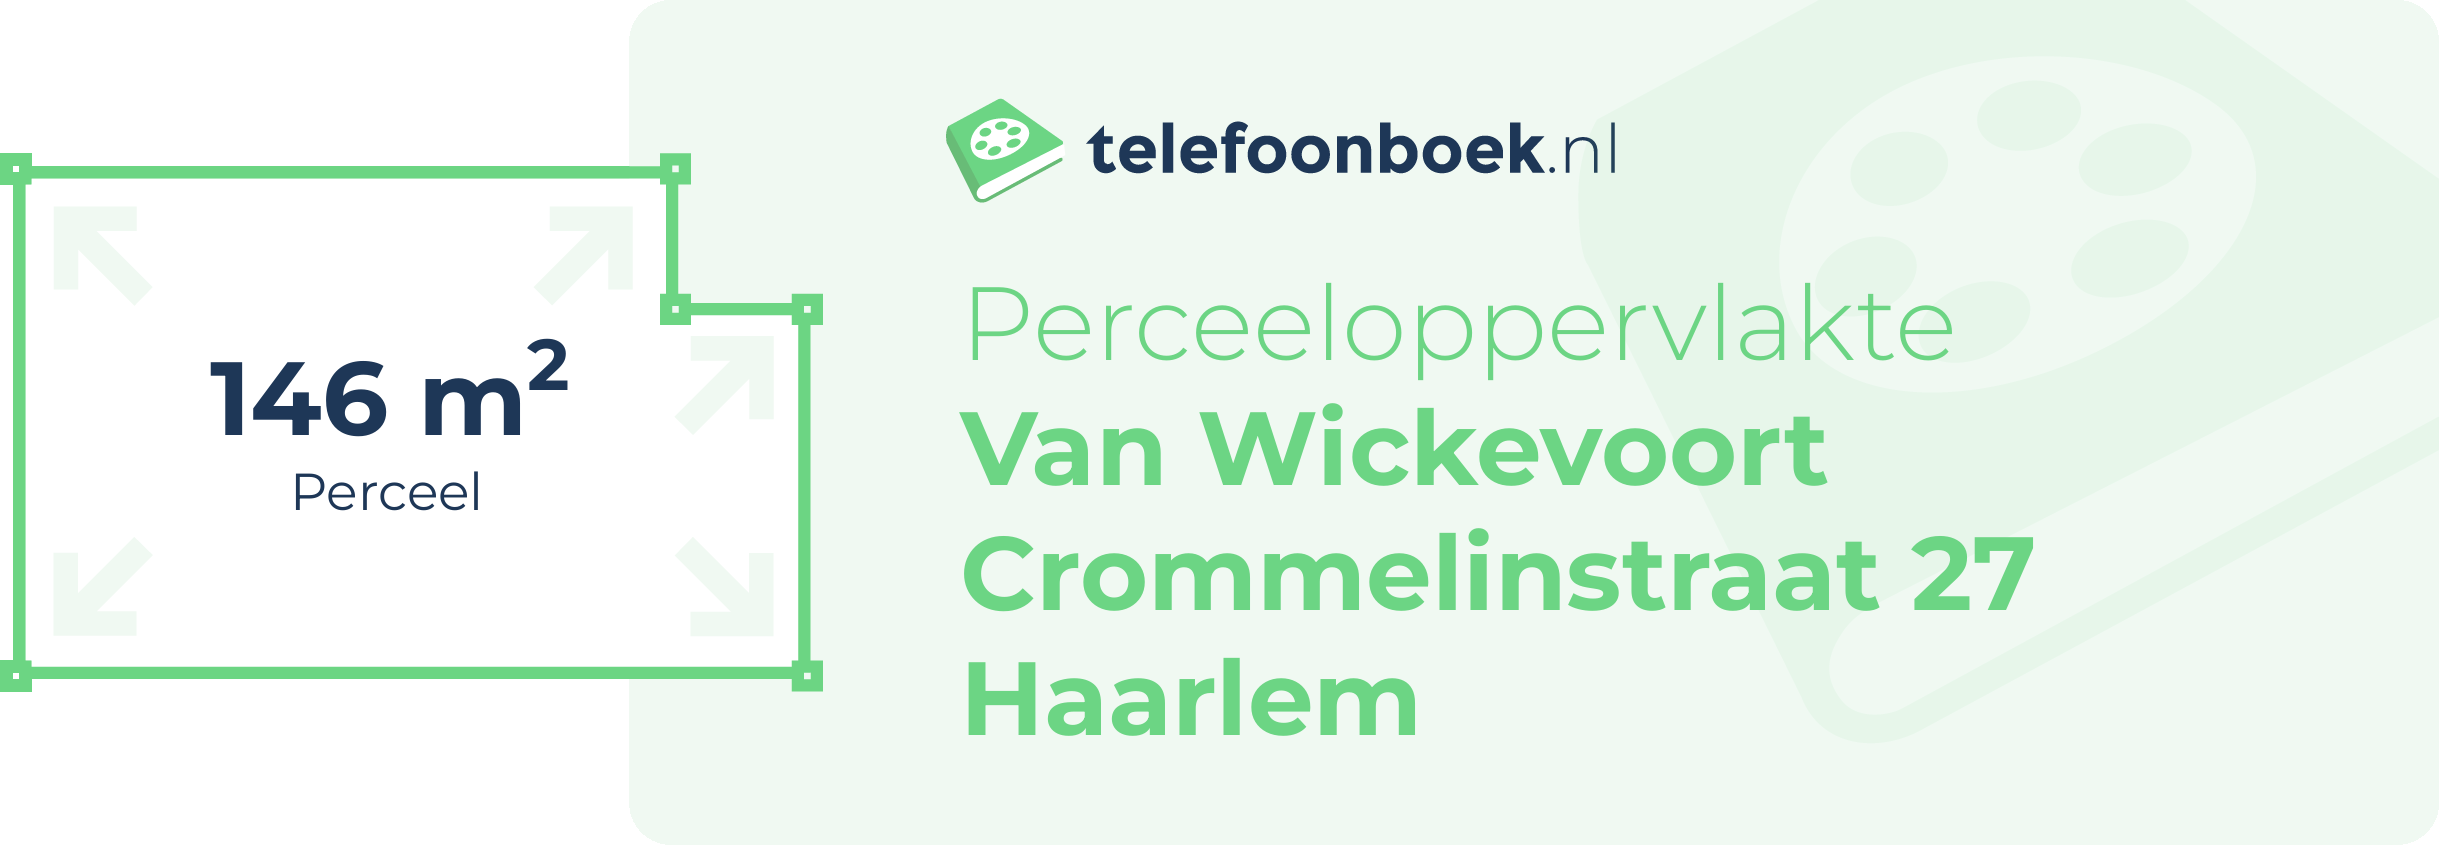 Perceeloppervlakte Van Wickevoort Crommelinstraat 27 Haarlem